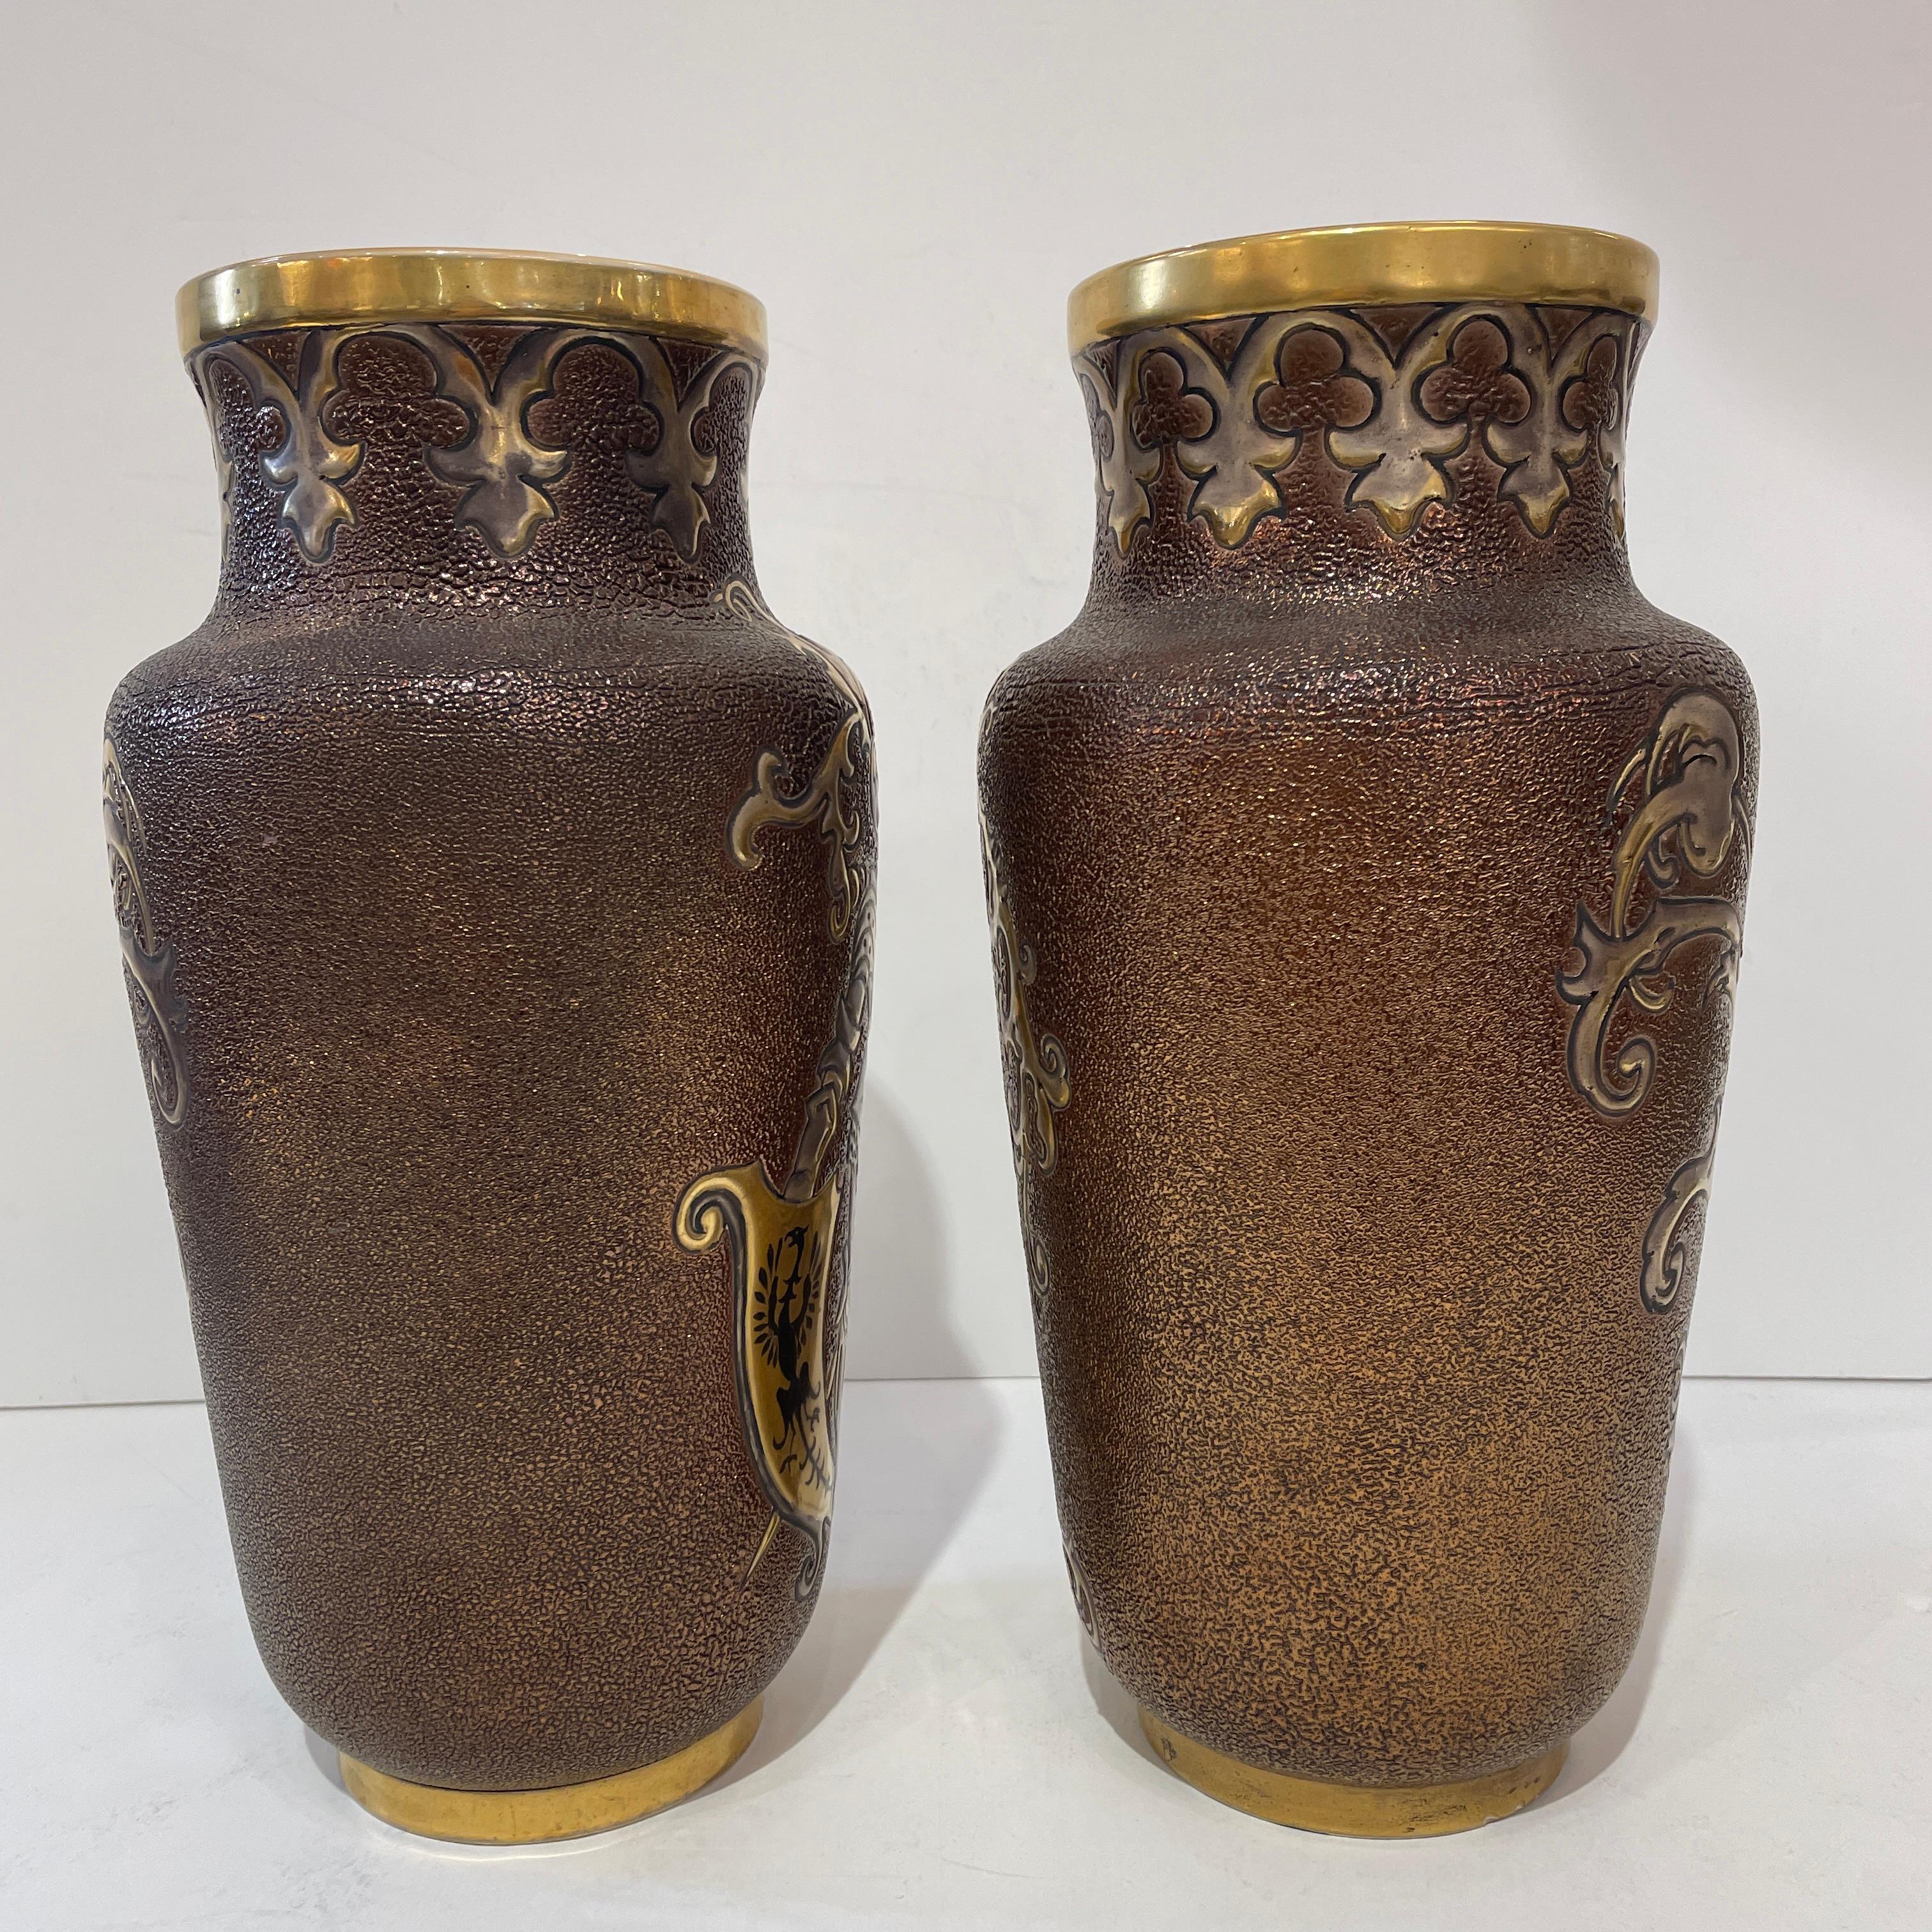 Une paire de vases en faïence très rare et signée, produite par la prestigieuse usine française de Gien, avec une technique d'émaillage unique appelée 